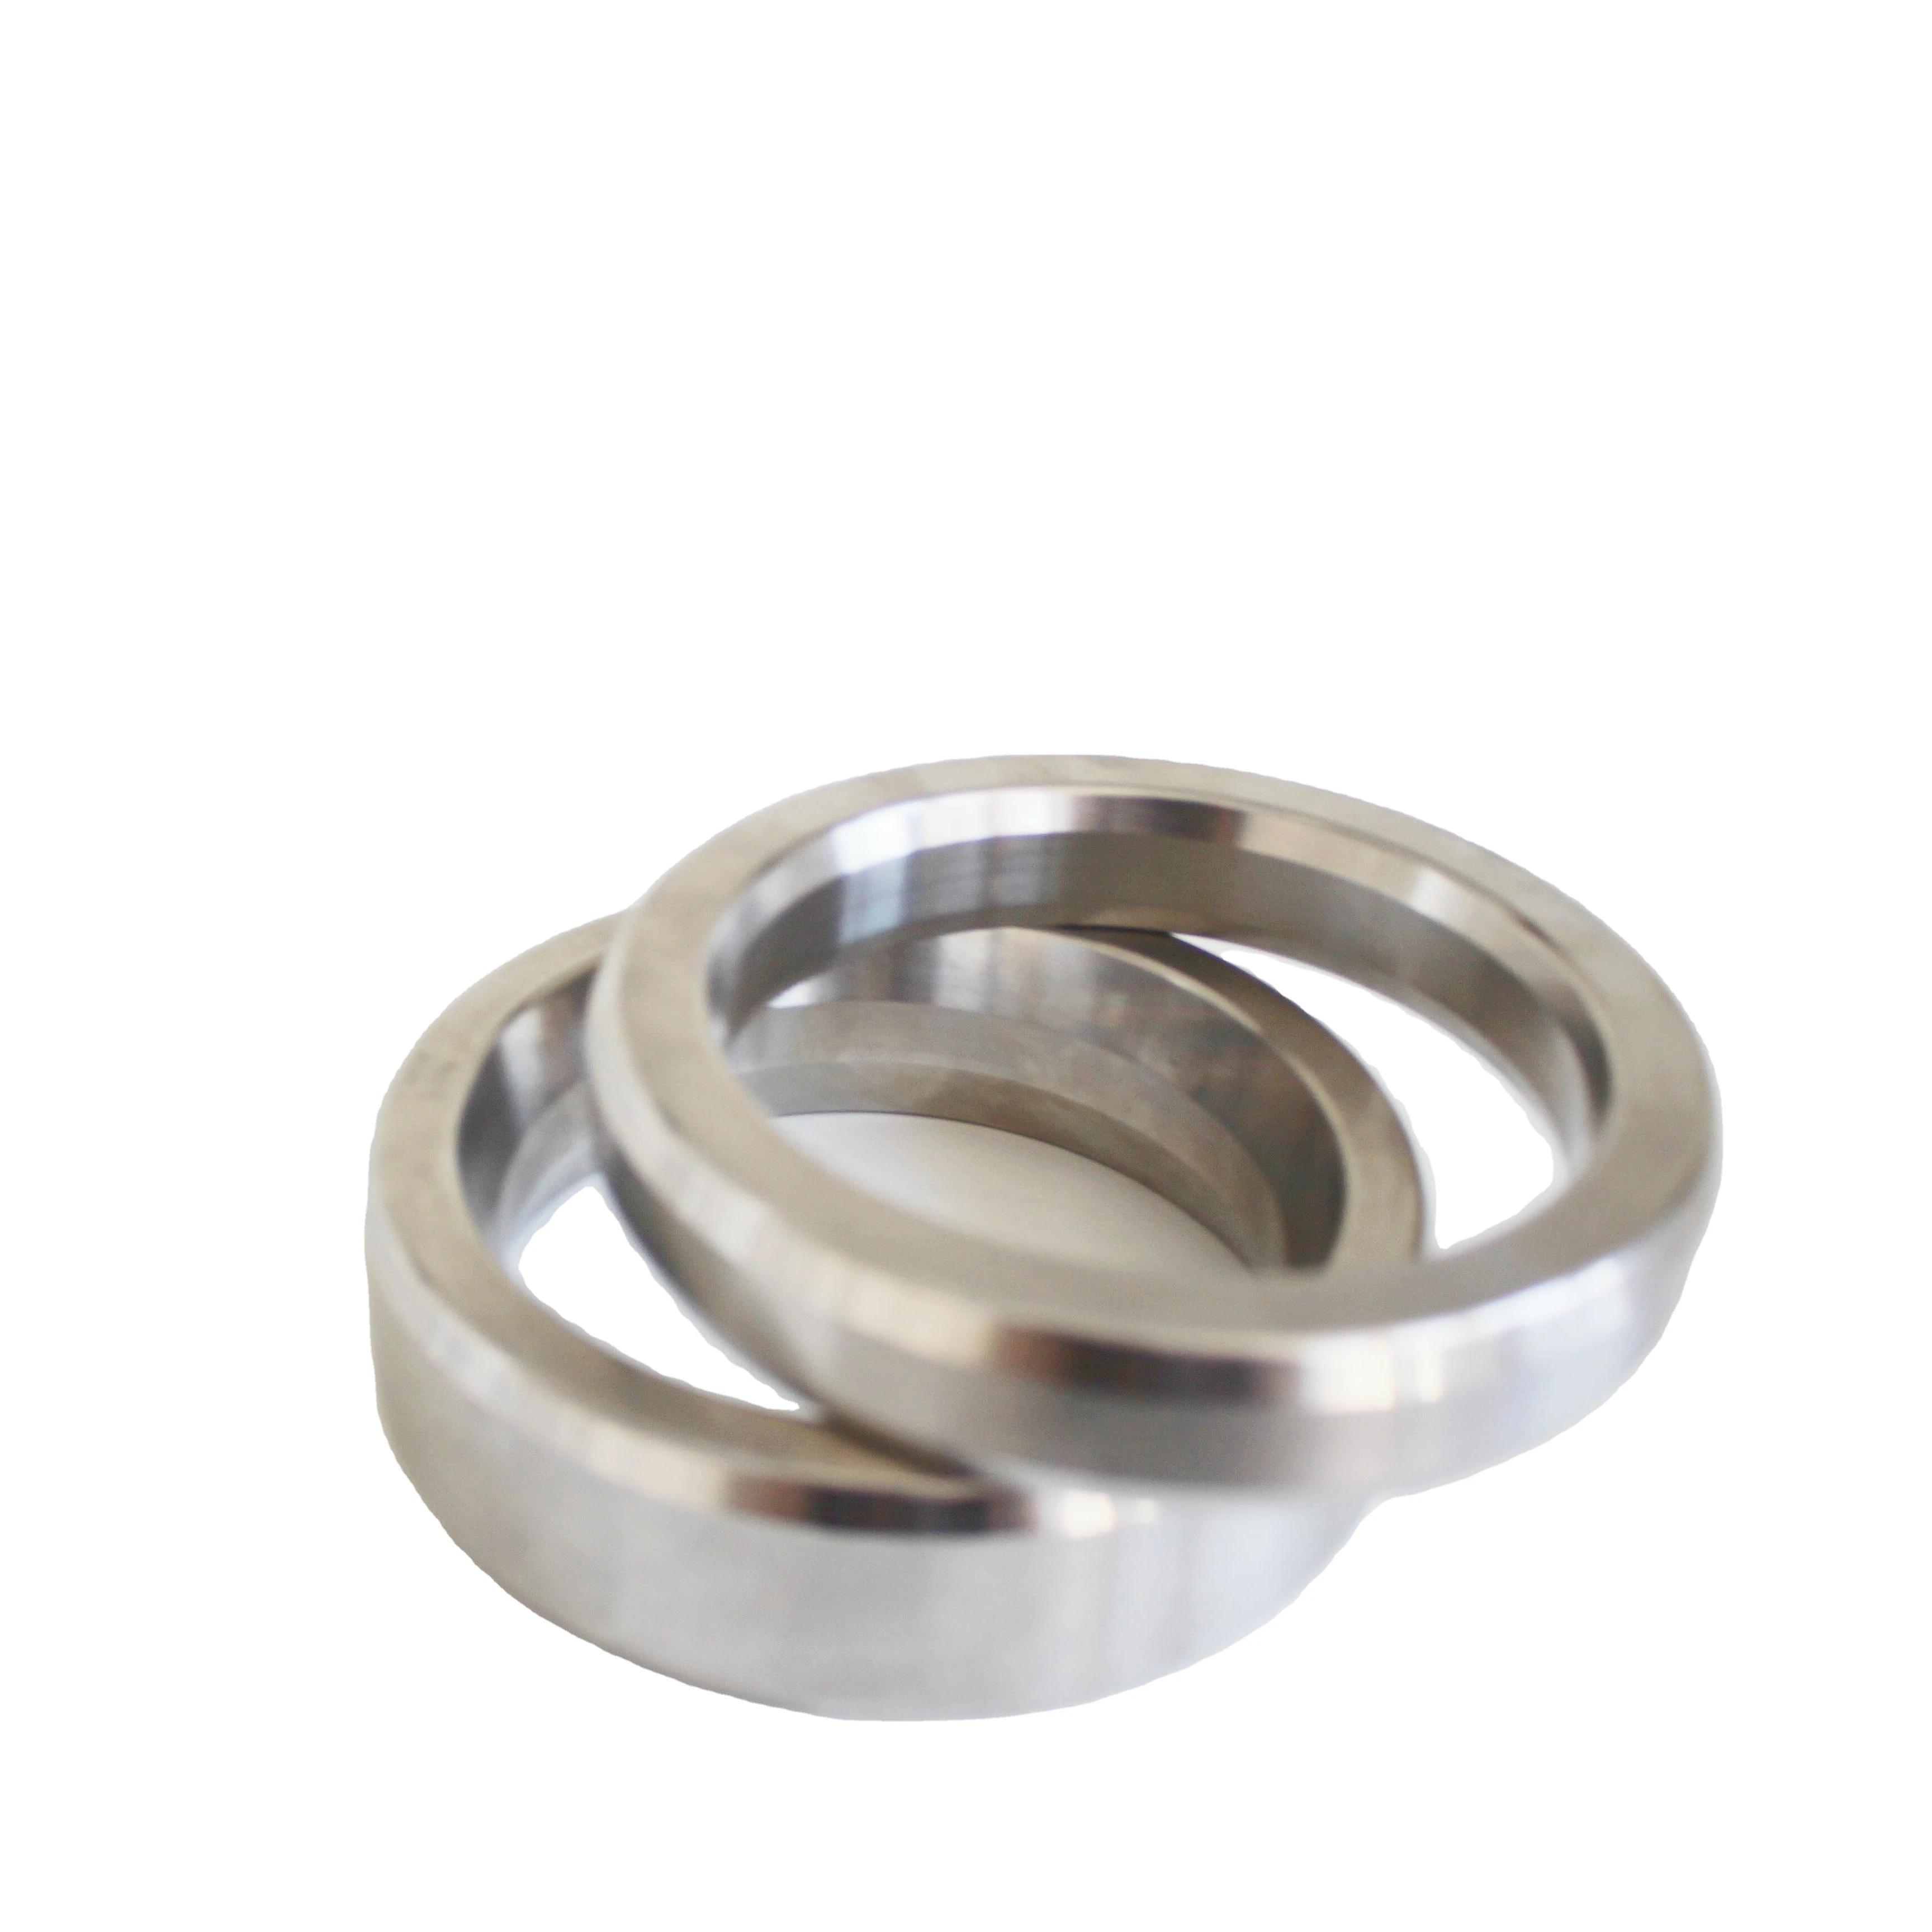 Прокладка трубы, фланец, соединительное кольцо, прокладка, металлическая прокладка, восьмиугольная Подушка rx (1600543053901)